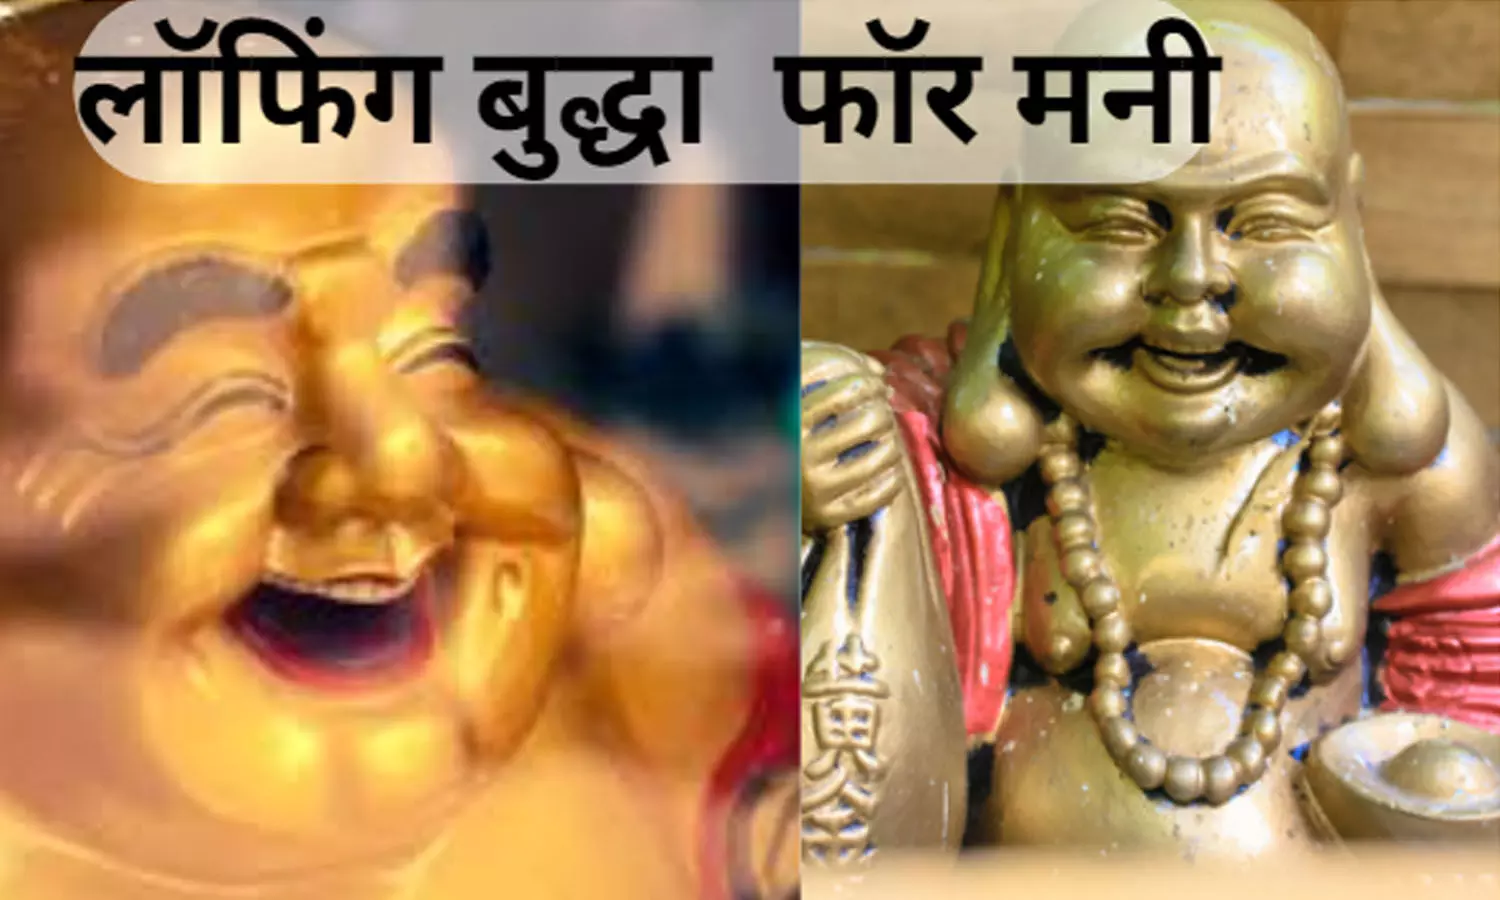 Laughing Buddha For Money लॉफिंग बुद्धा फॉर मनी: कौन है लॉफिंग बुद्धा, कैसे बदलेगा भाग्य, कब खुलेगा सौभाग्य, जानिए सब...